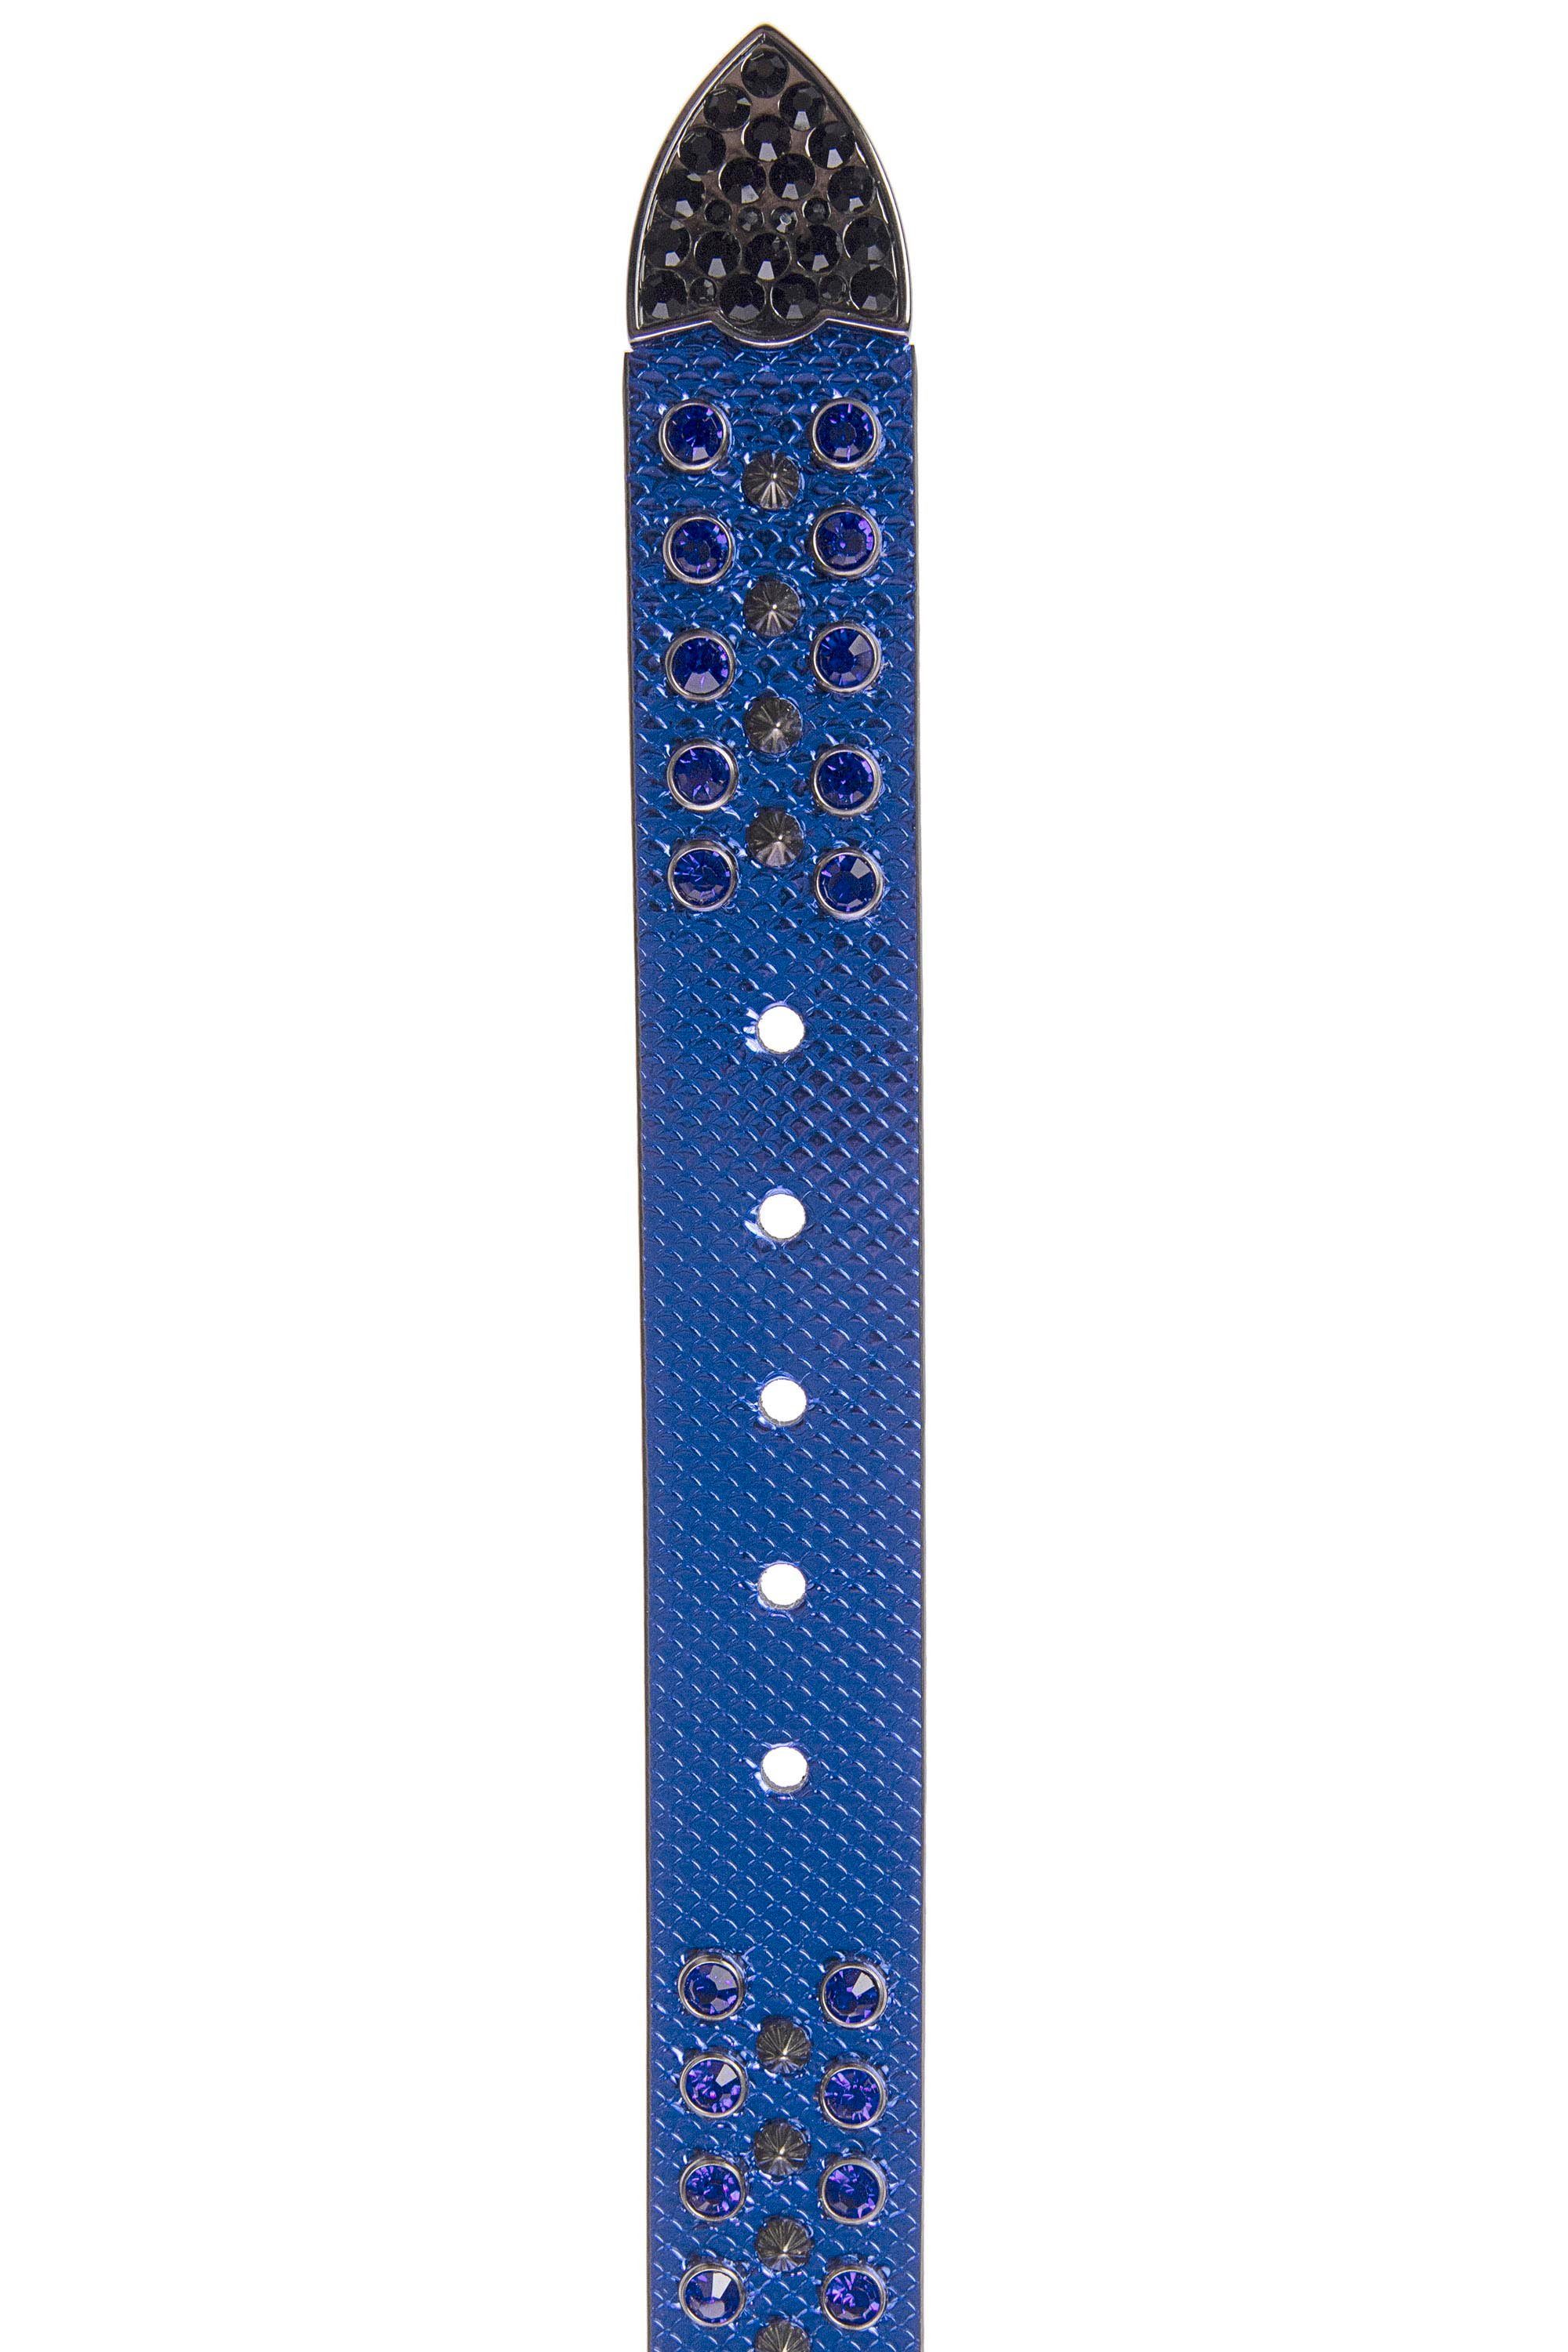 Cipo & blau Glitzersteinchen Baxx mit Ledergürtel trendigen